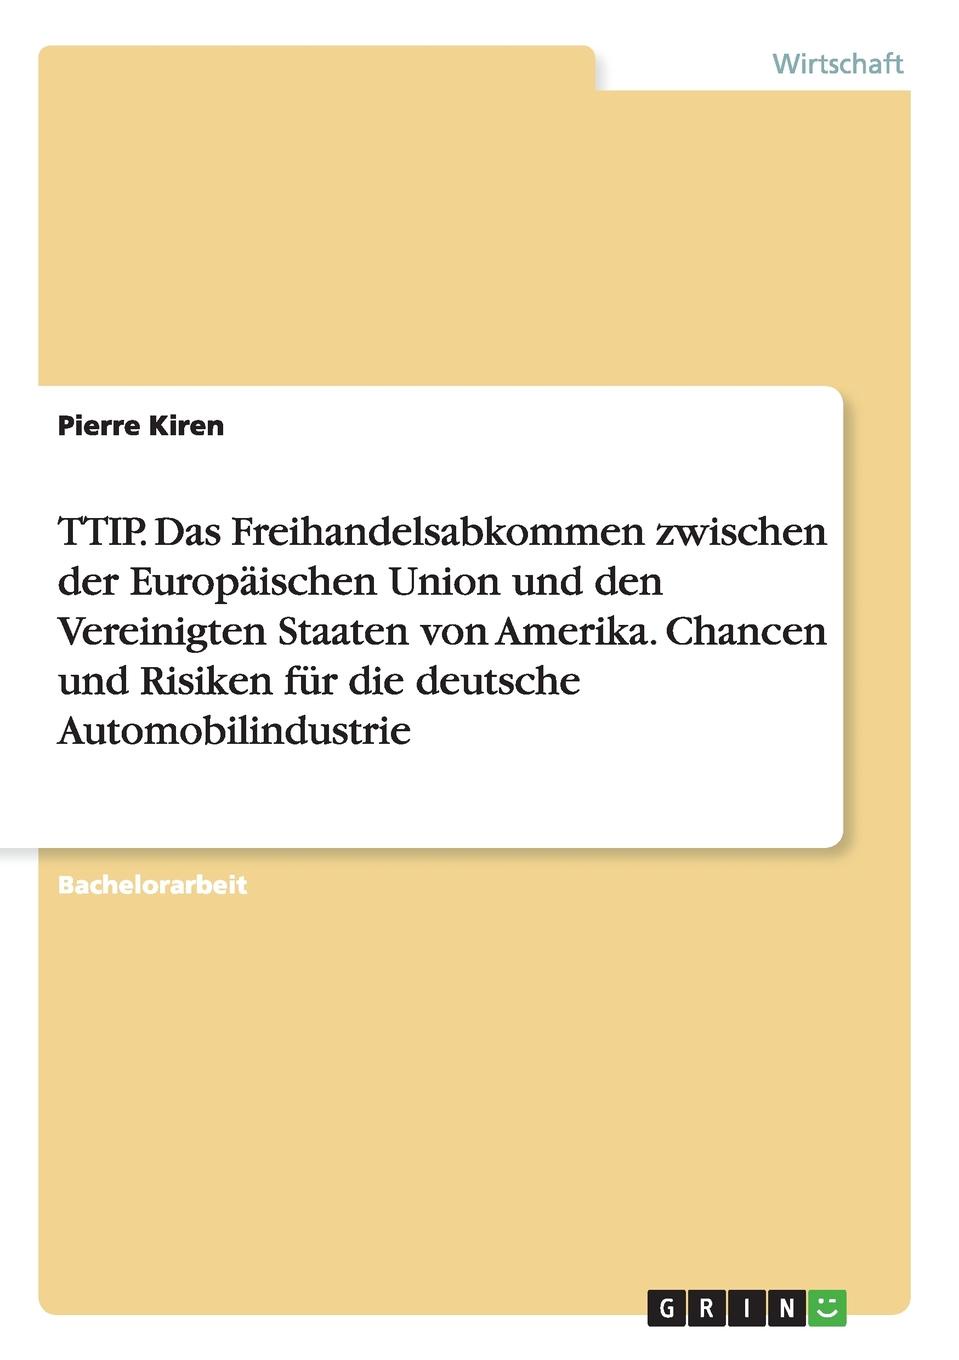 TTIP. Das Freihandelsabkommen zwischen der Europaischen Union und den Vereinigten Staaten von Amerika. Chancen und Risiken fur die deutsche Automobilindustrie